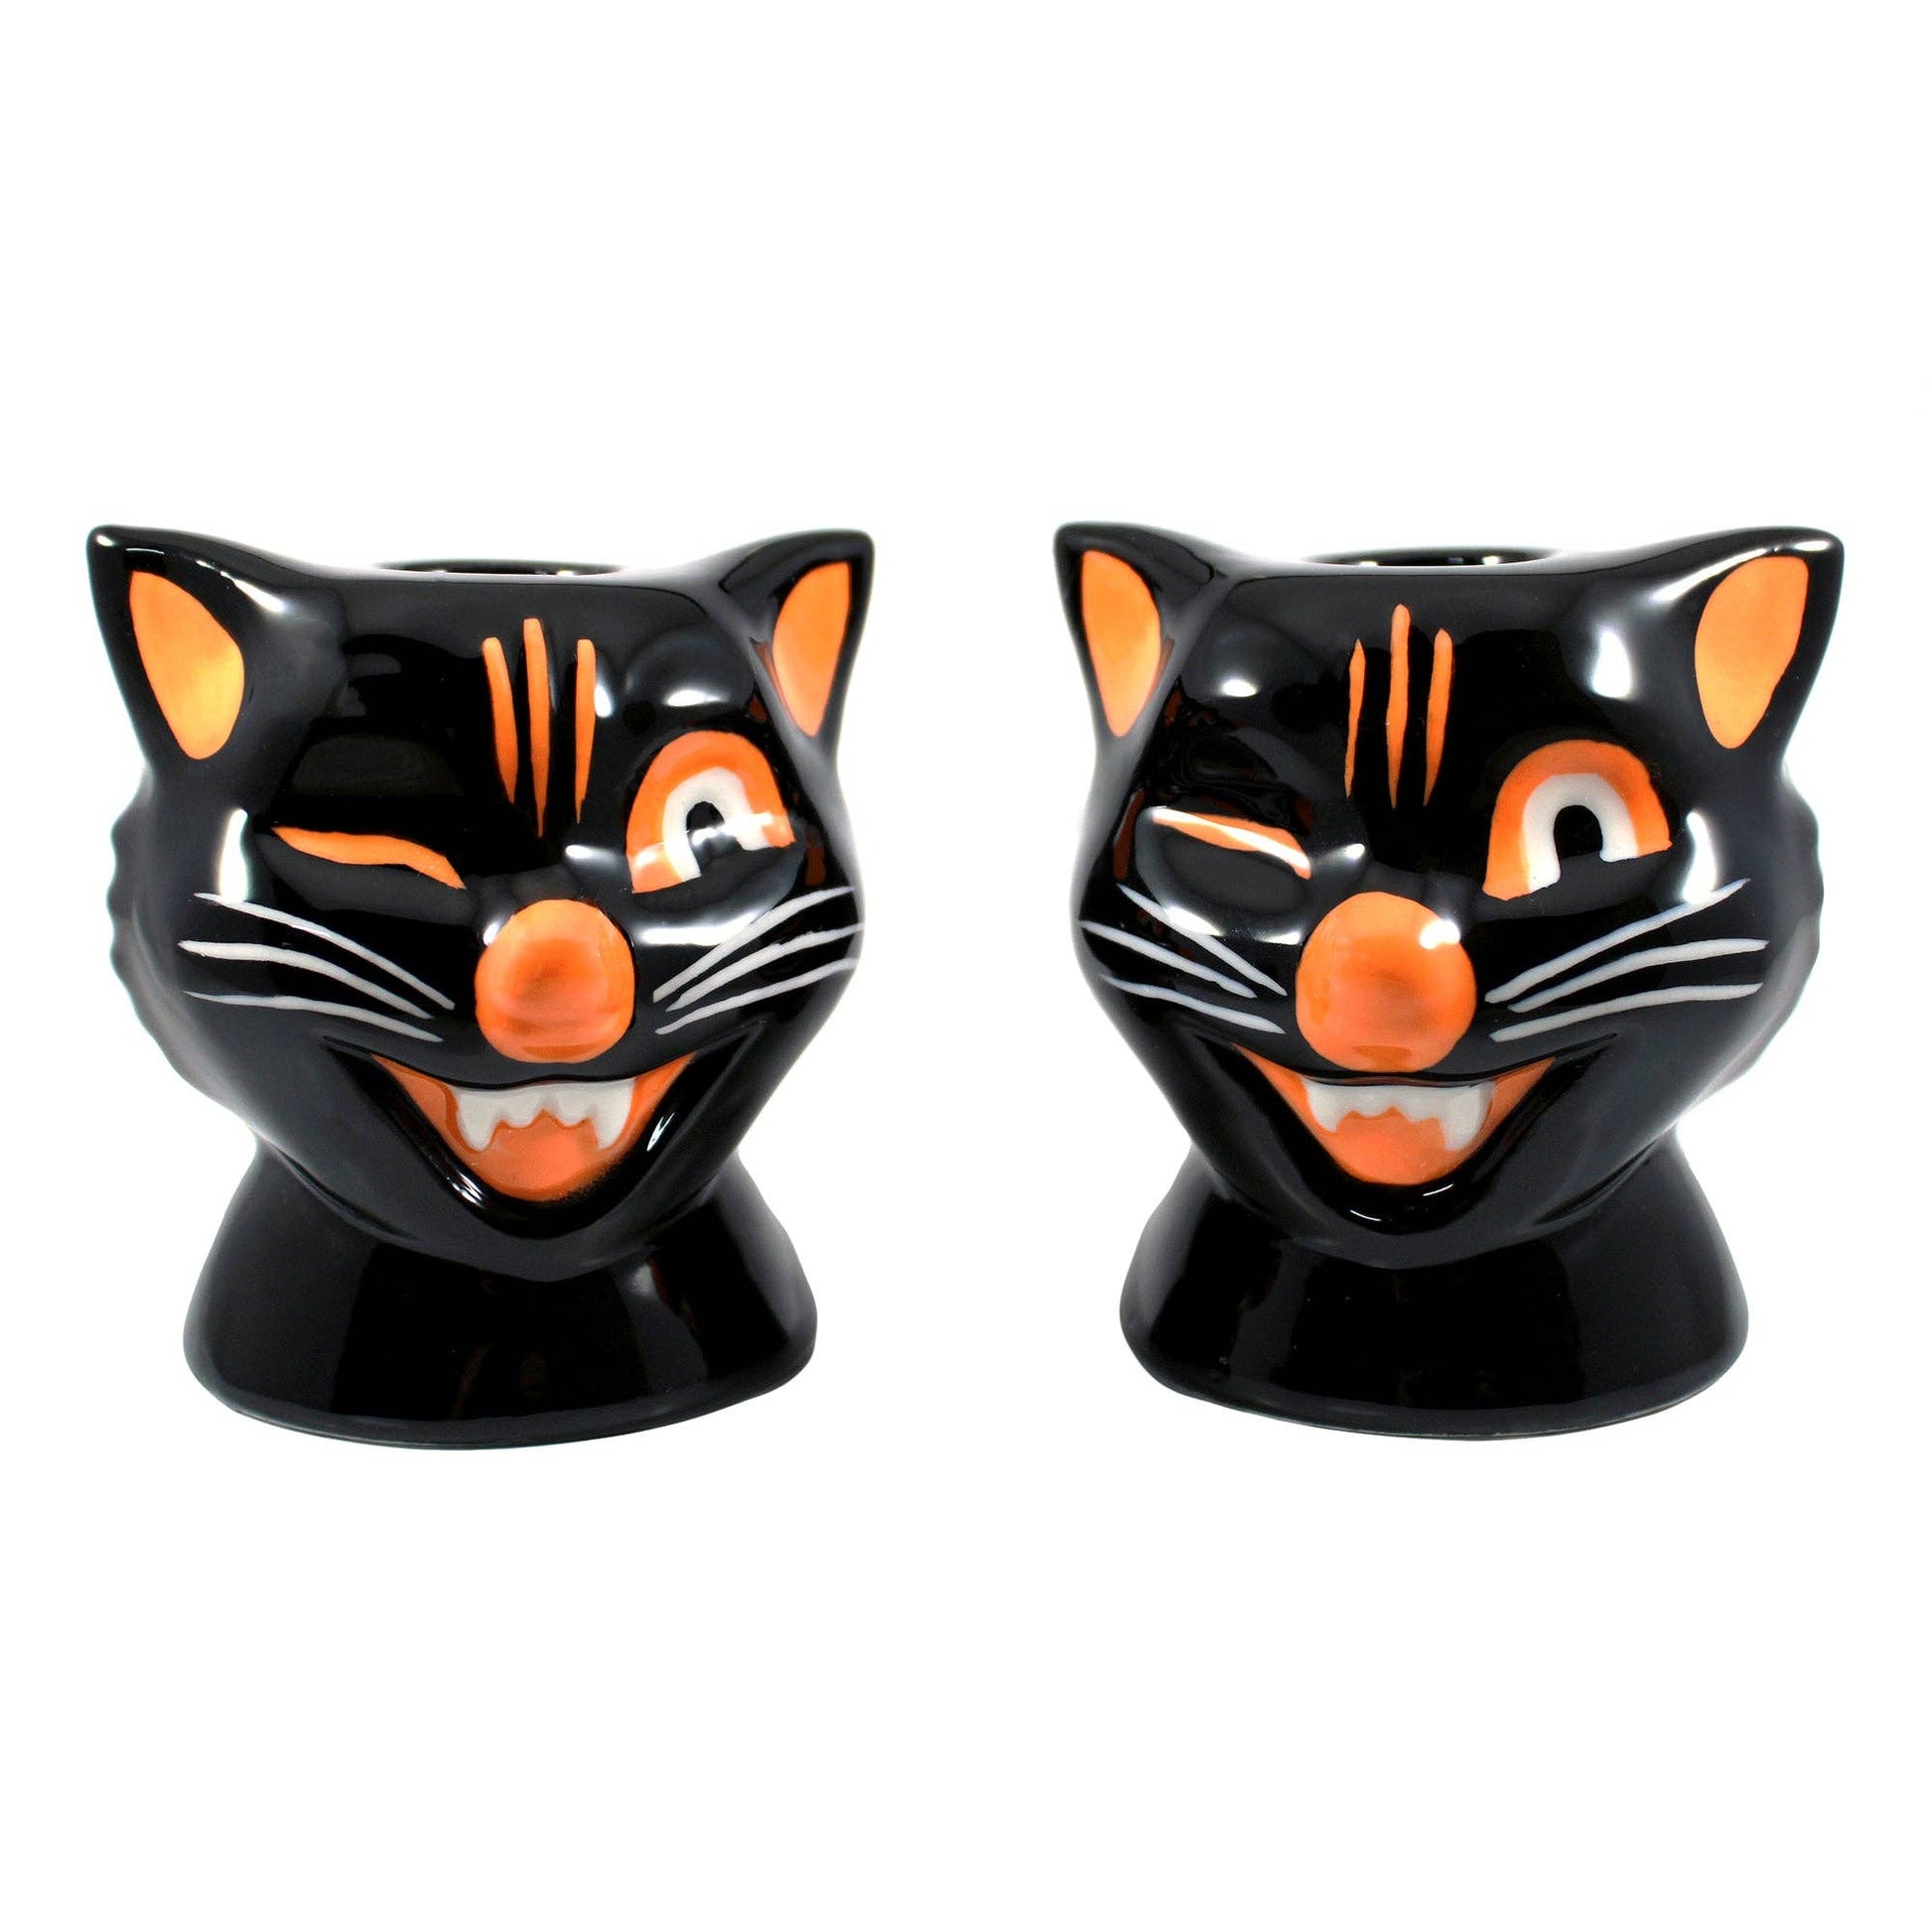 Set of 2 Black Cat Candle Holder | Vintage Spooky Ceramic Candlestick Holder Set